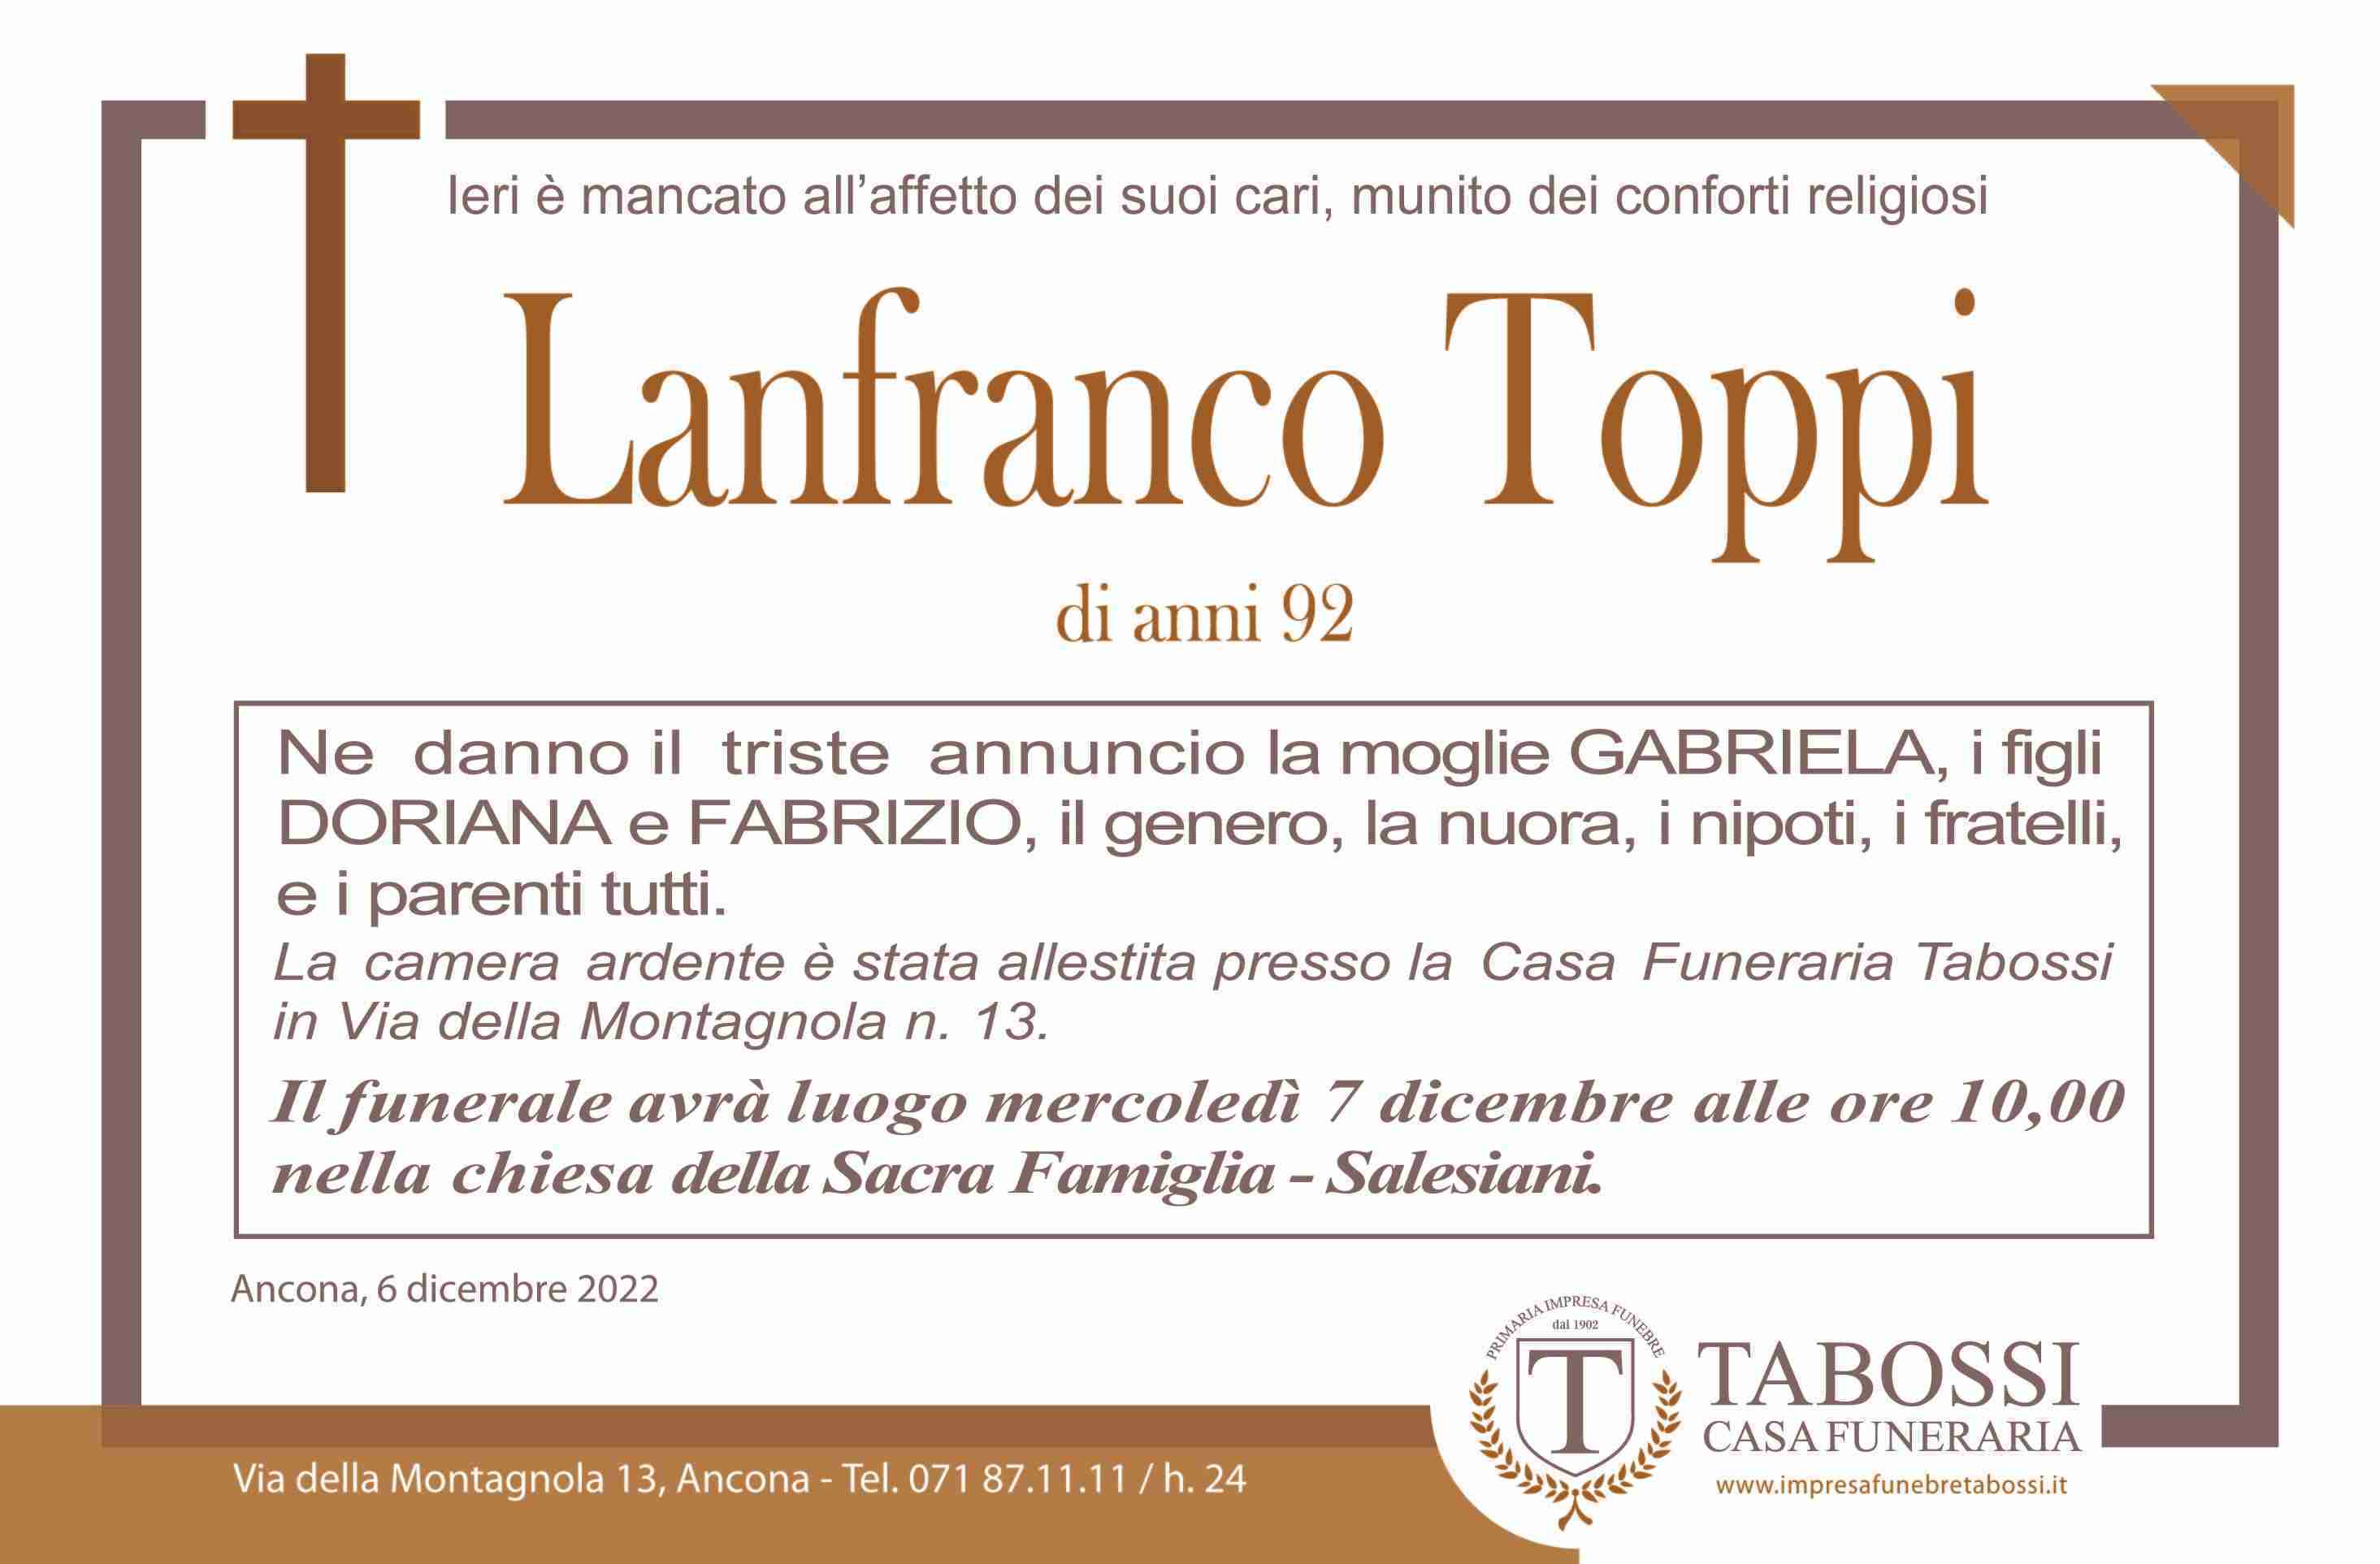 Lanfranco Toppi